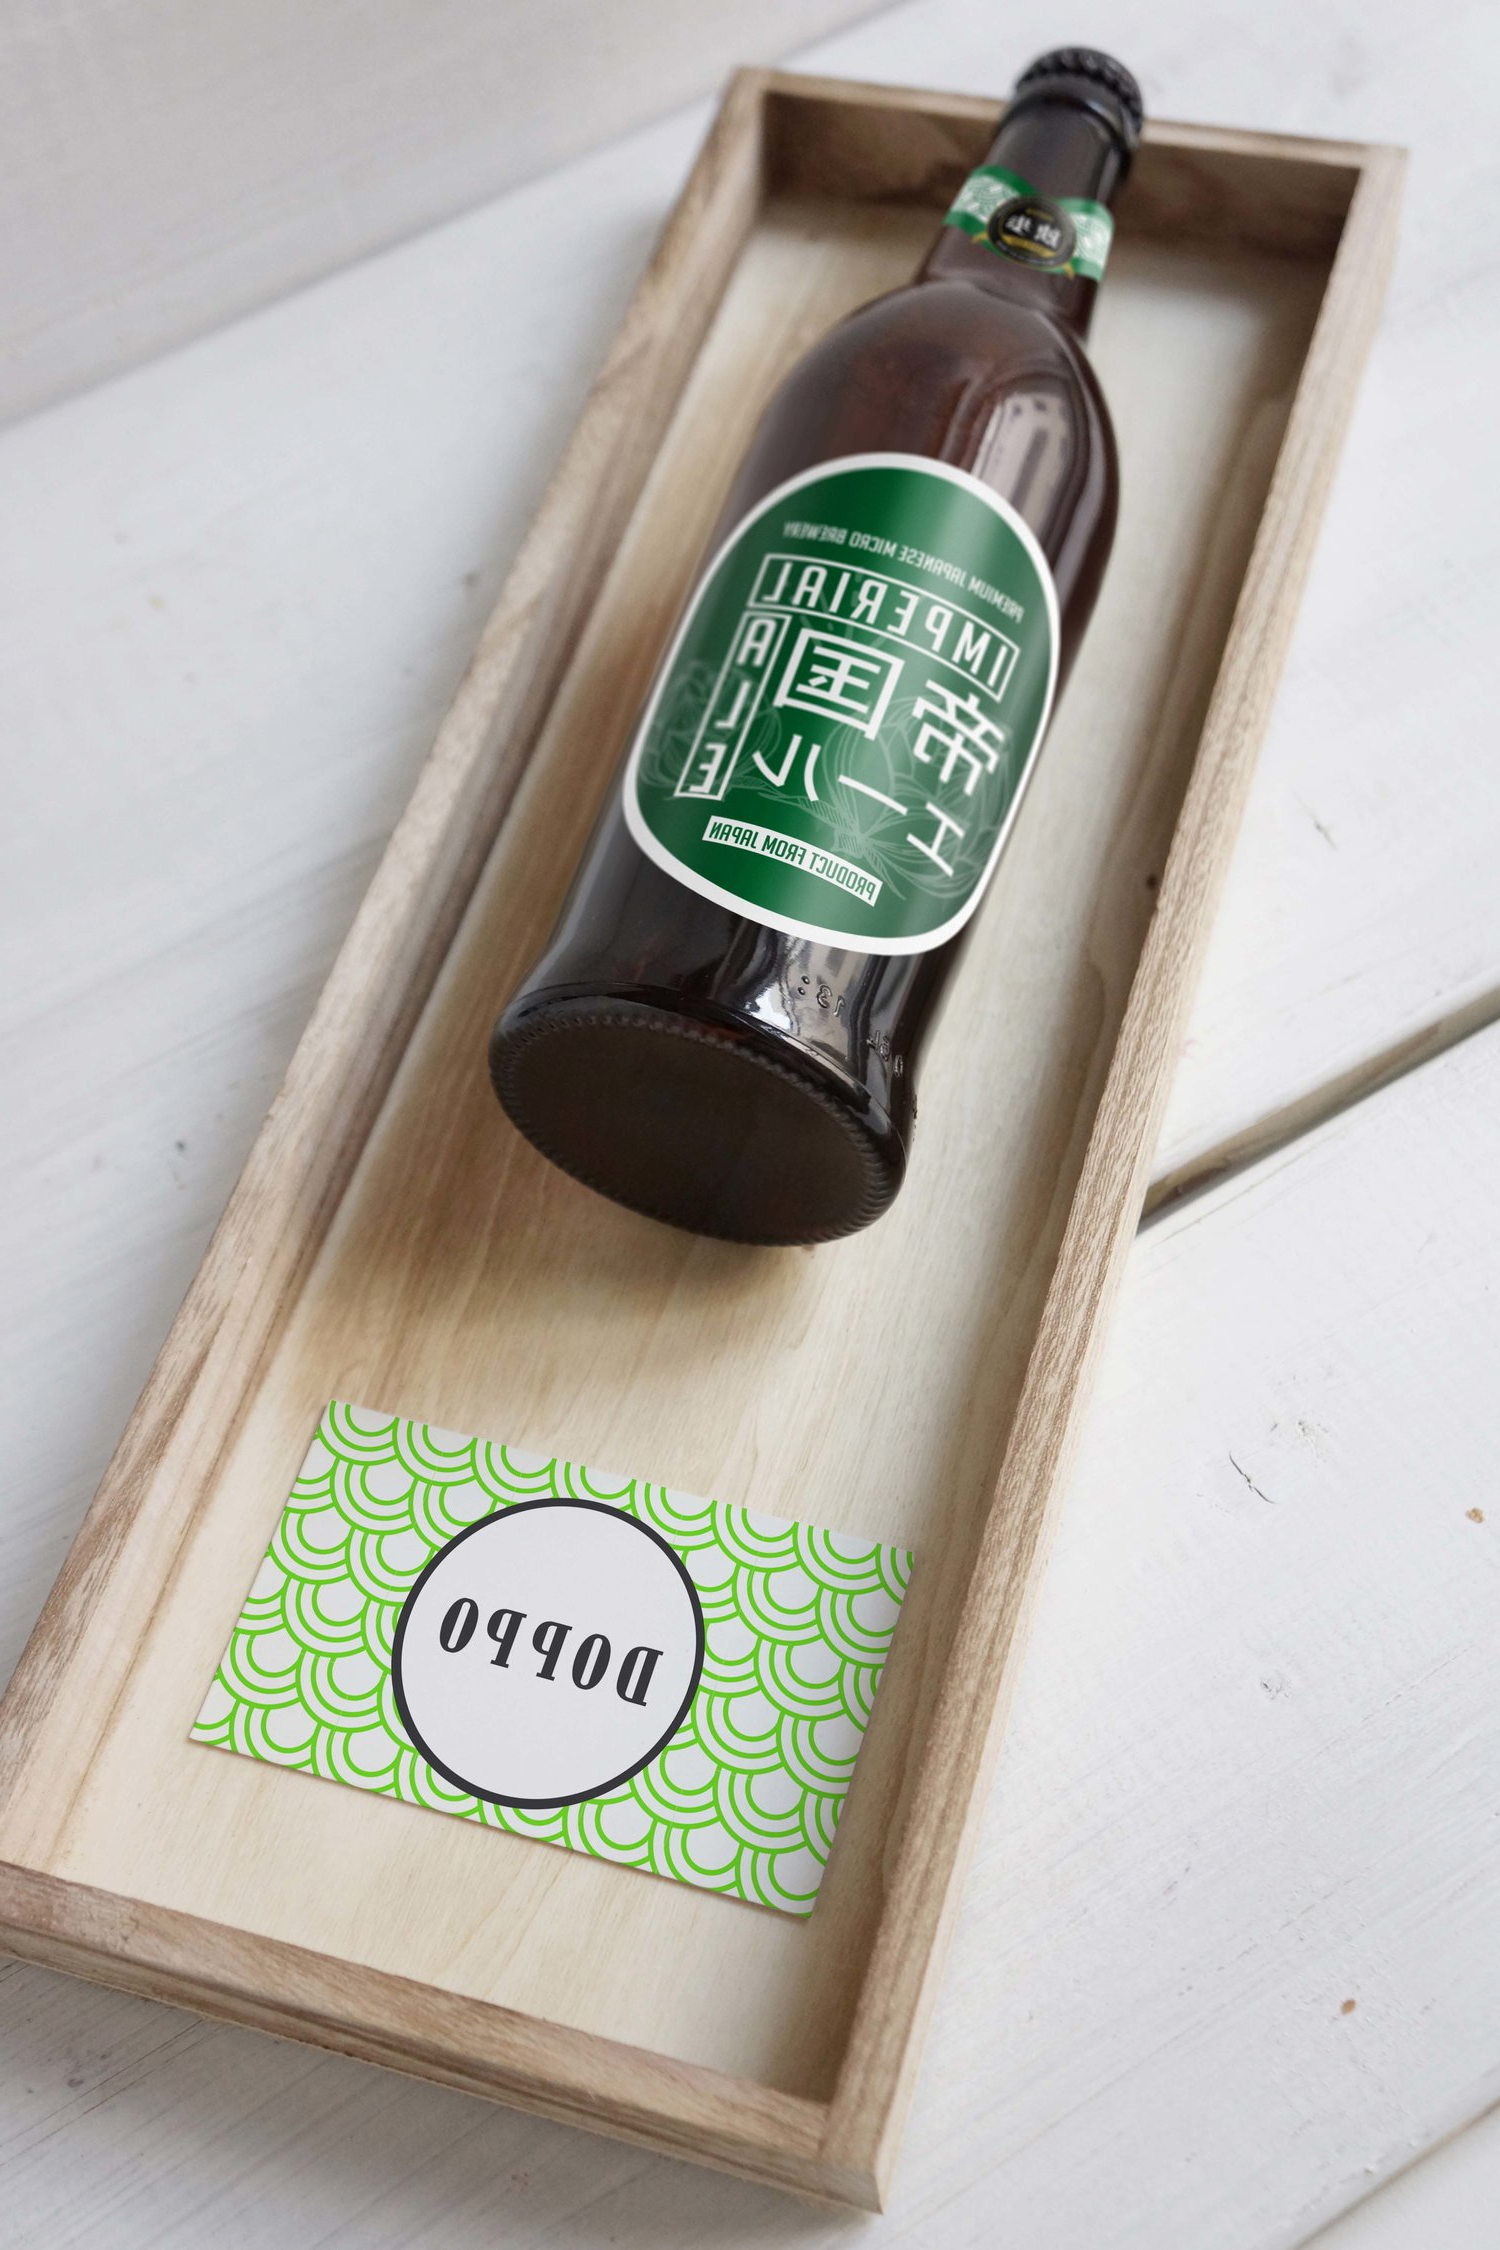 来自日本冈山的Doppo啤酒的包装设计(图4)